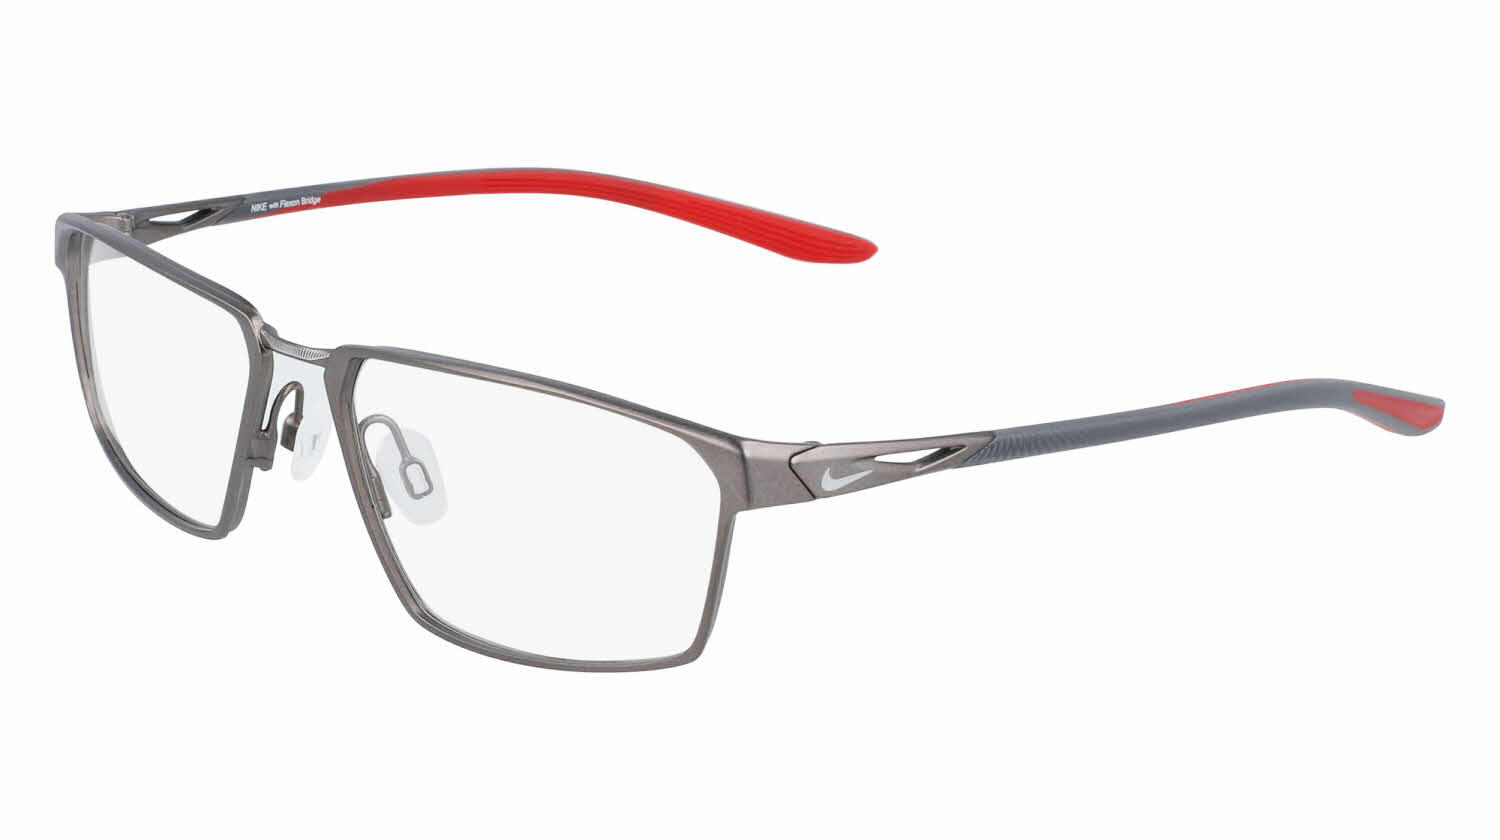 Nike 4310 Eyeglasses In Red